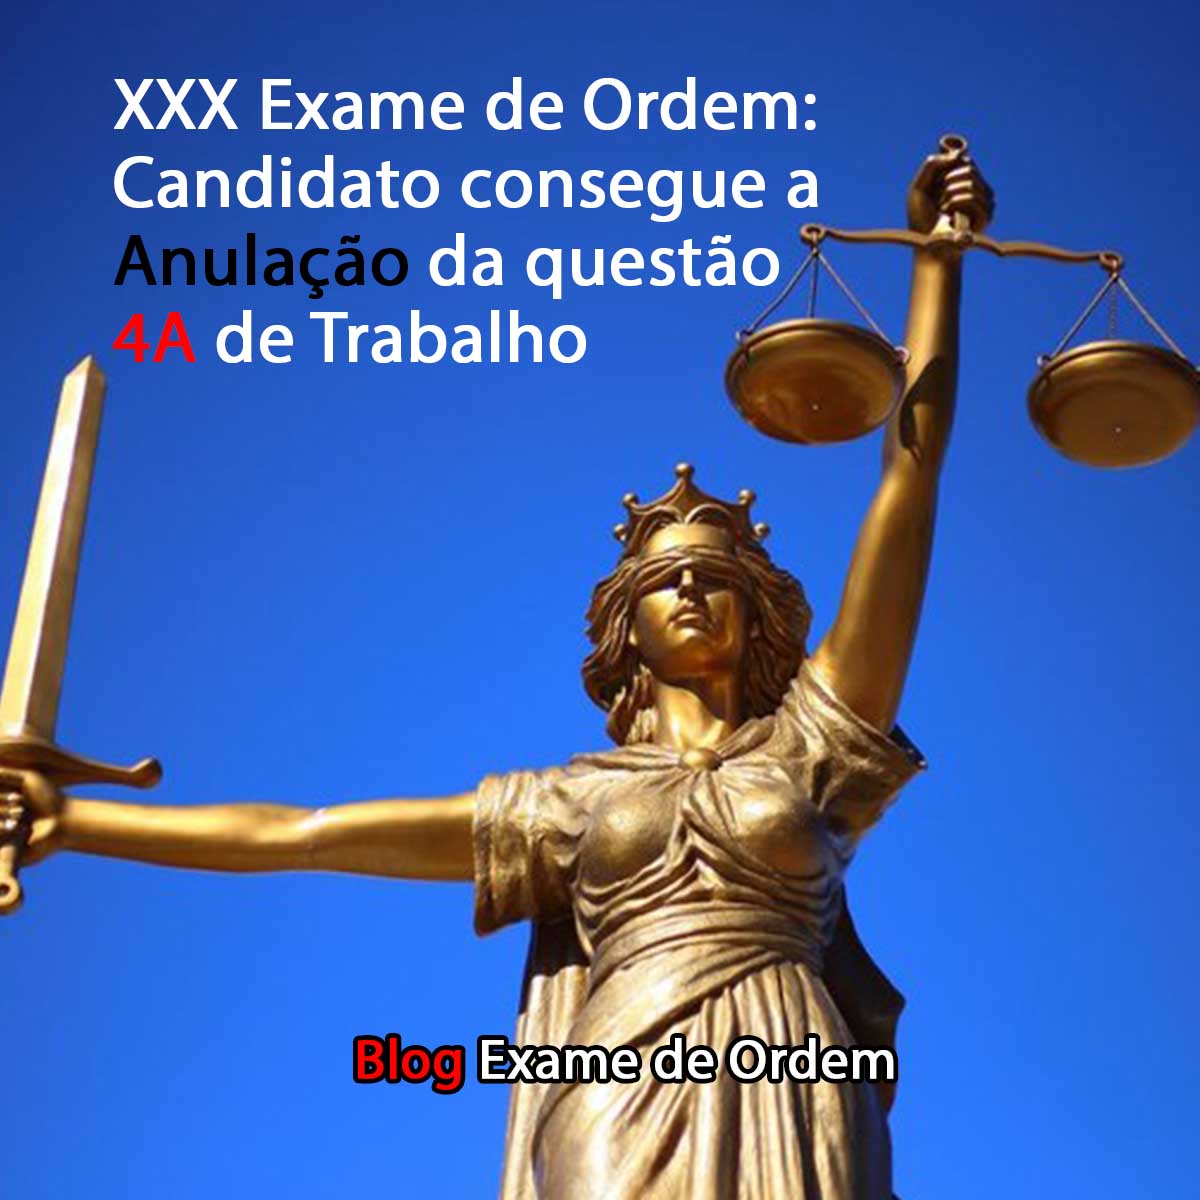 XXX Exame de Ordem: candidato consegue anulação da questão 4A de Trabalho